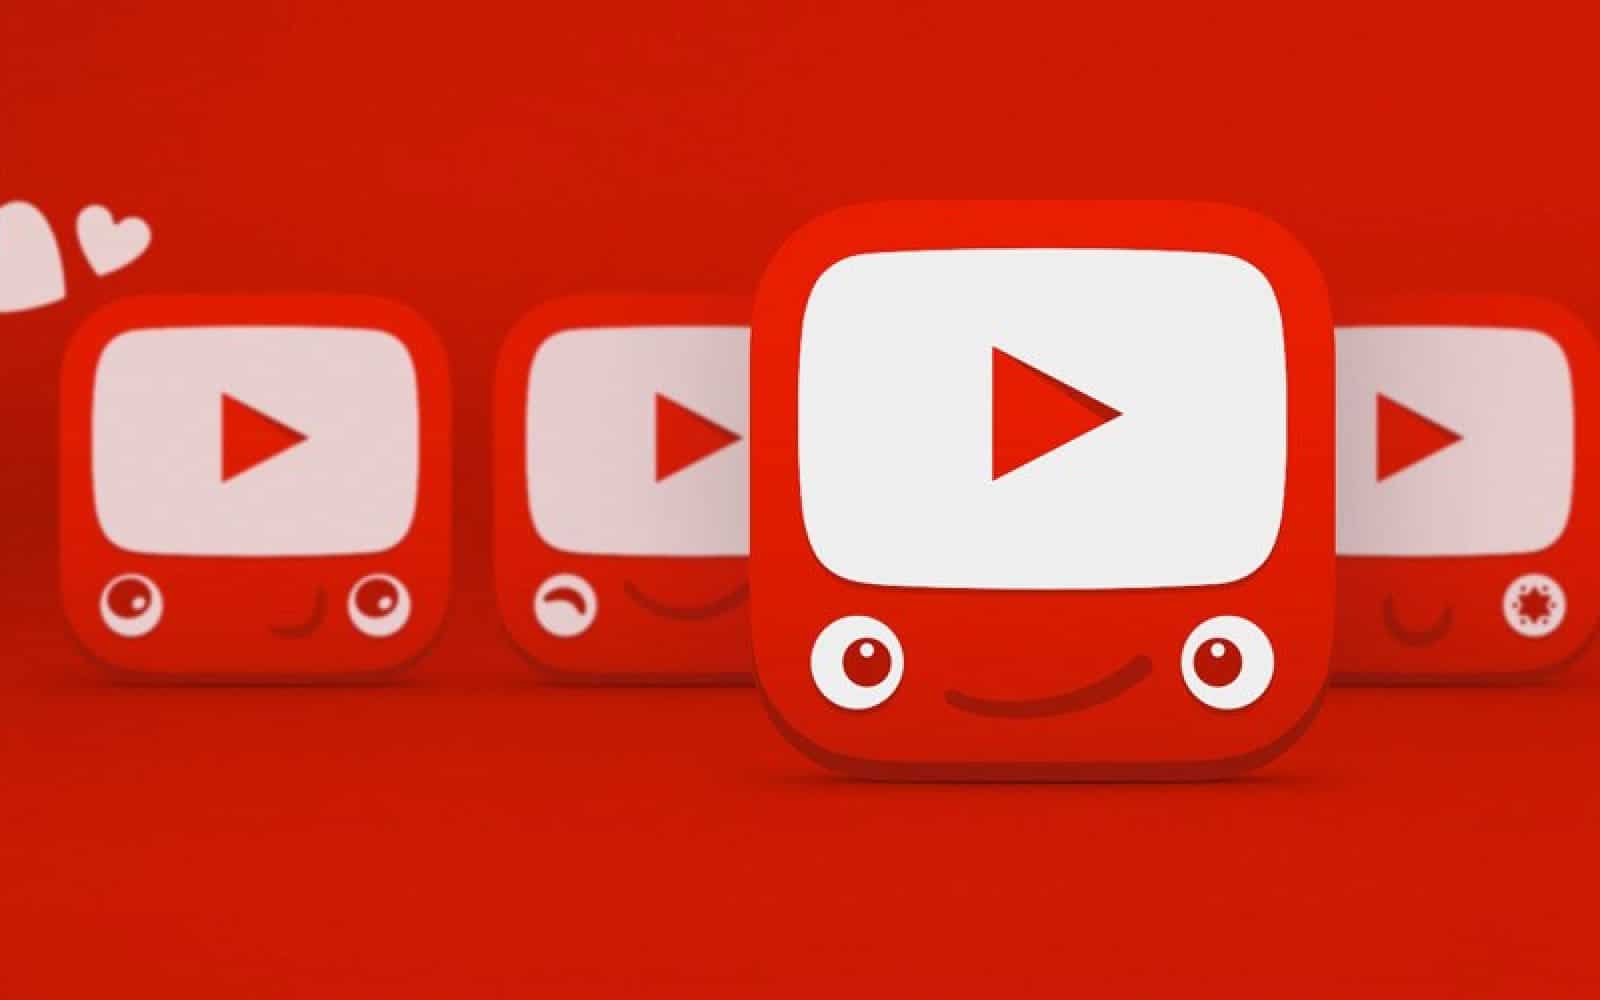 يوتيوب تخطط لإنهاء الإعلانات المستهدفة ضمن محتوى الأطفال   البوابة العربية للأخبار التقنية